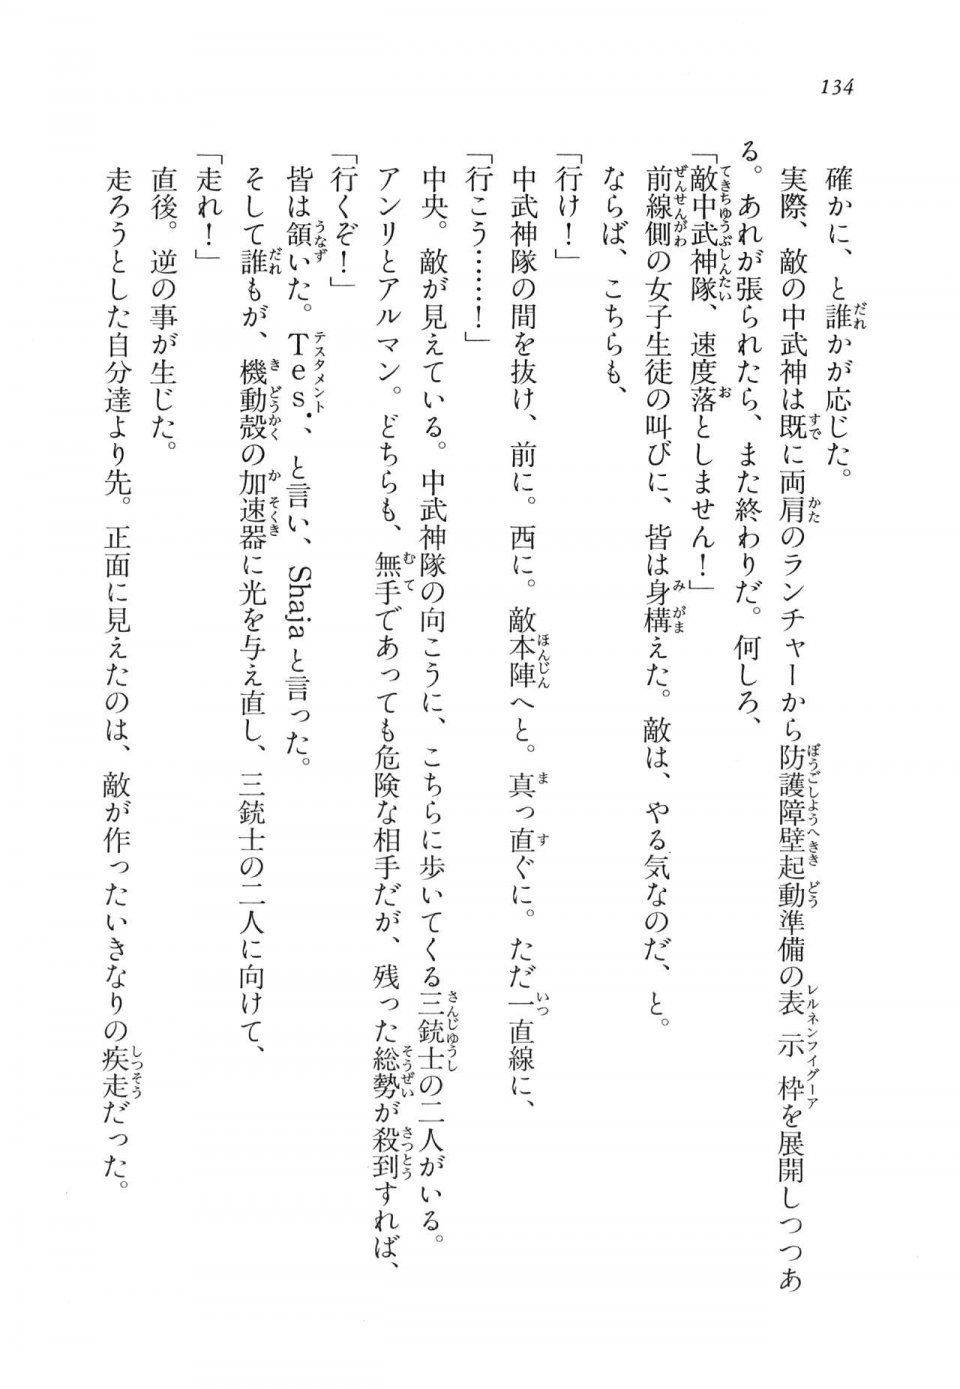 Kyoukai Senjou no Horizon LN Vol 11(5A) - Photo #134